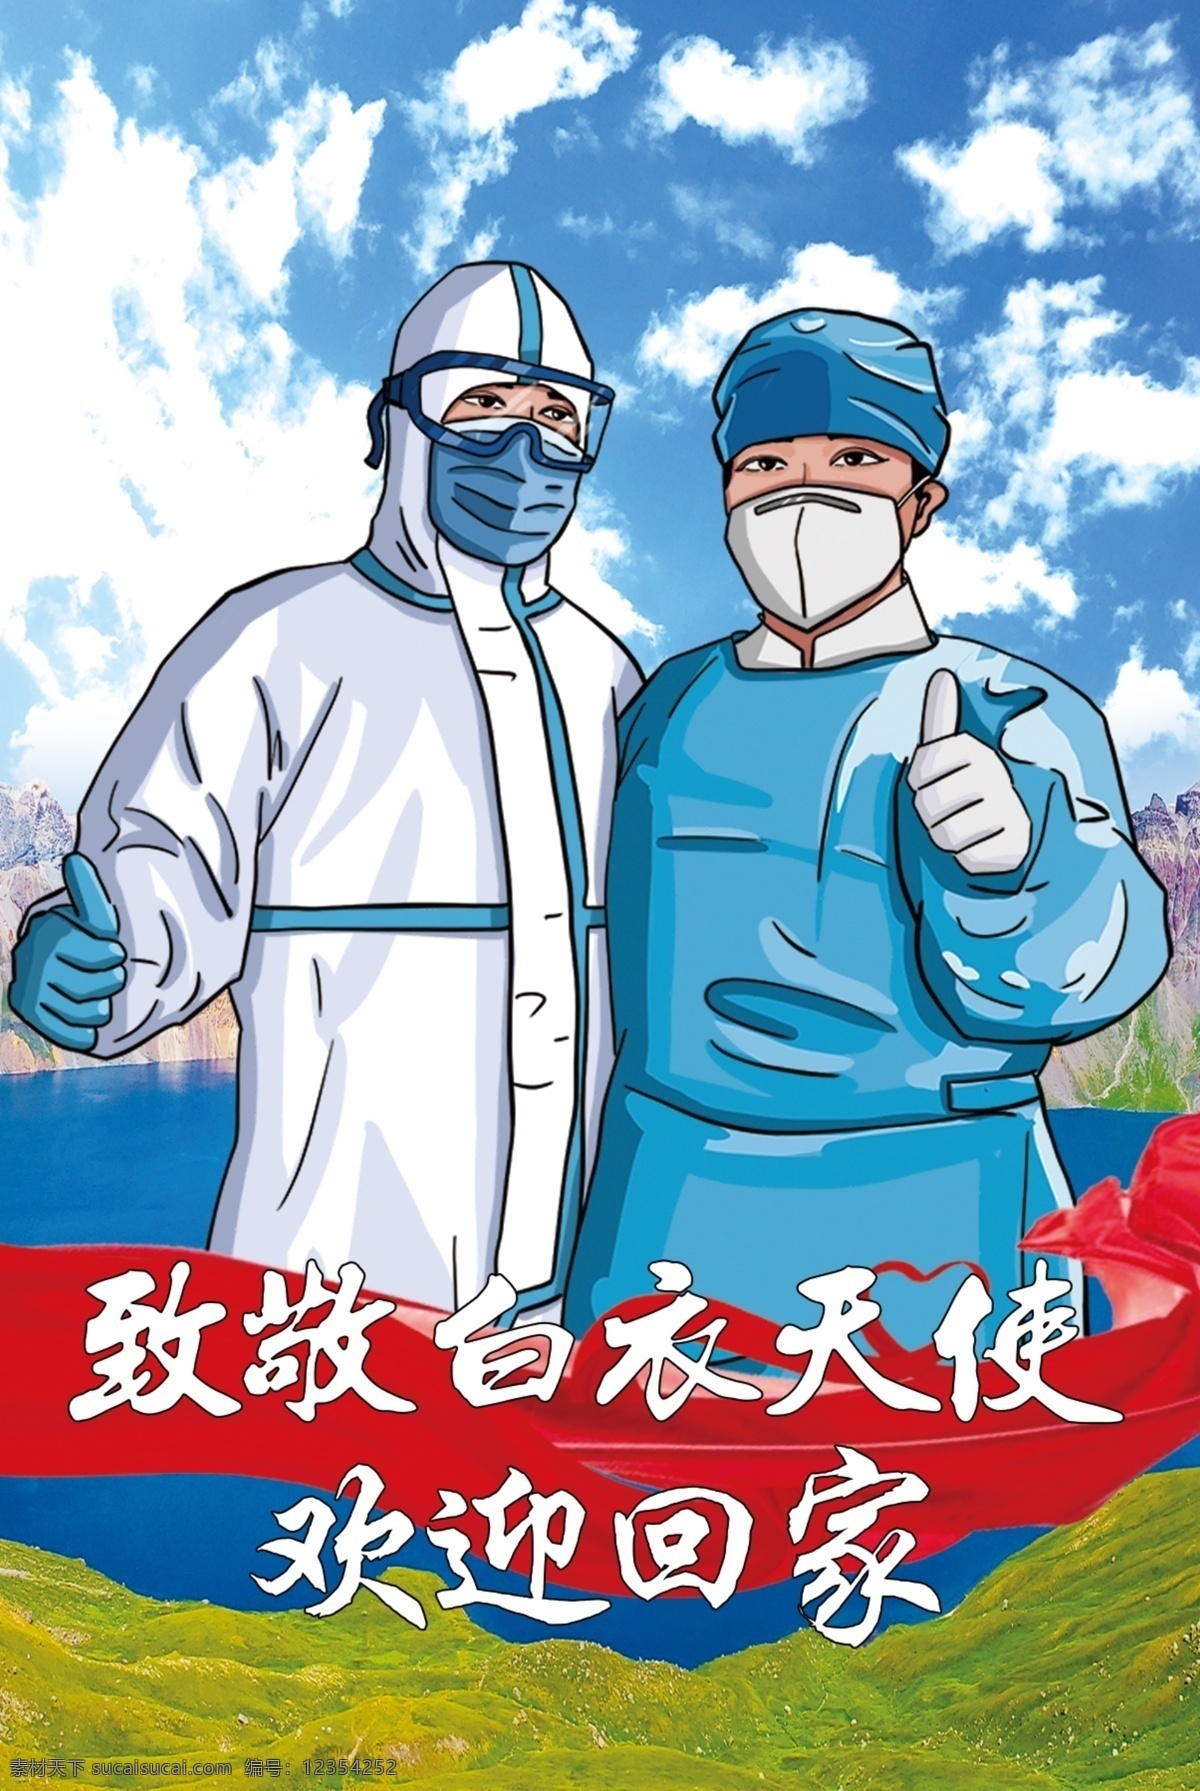 疫情白衣天使 疫情 白衣天使 流感 新冠肺炎 疫情流感 疫情护士 疫情医生 护士 医生 jinguangsheji 分层